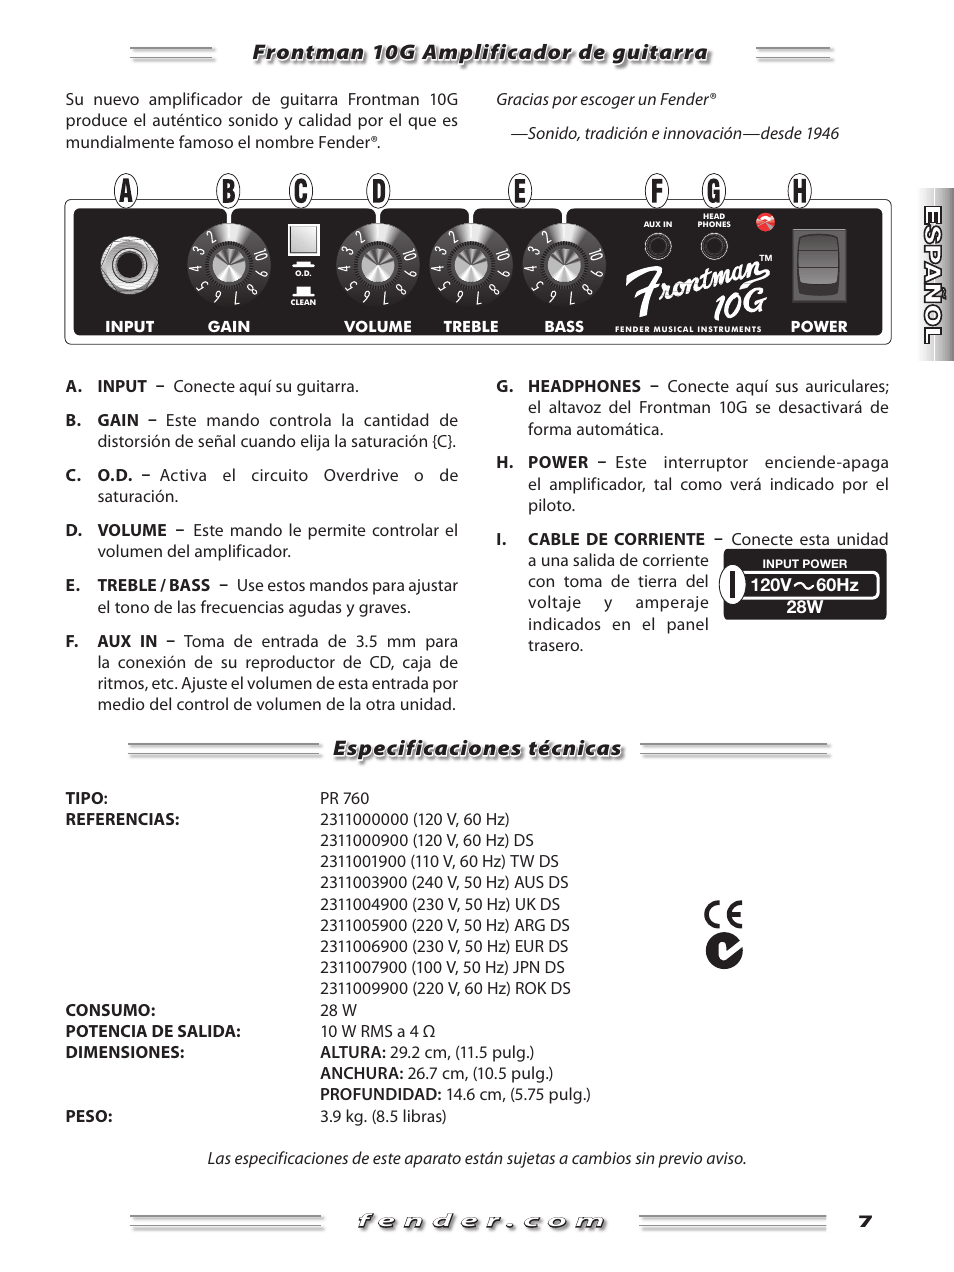 Frontman 10g amplificador de guitarra, Especificaciones técnicas | Fender  Frontman 10G User Manual | Page 7 / 16 | Original mode